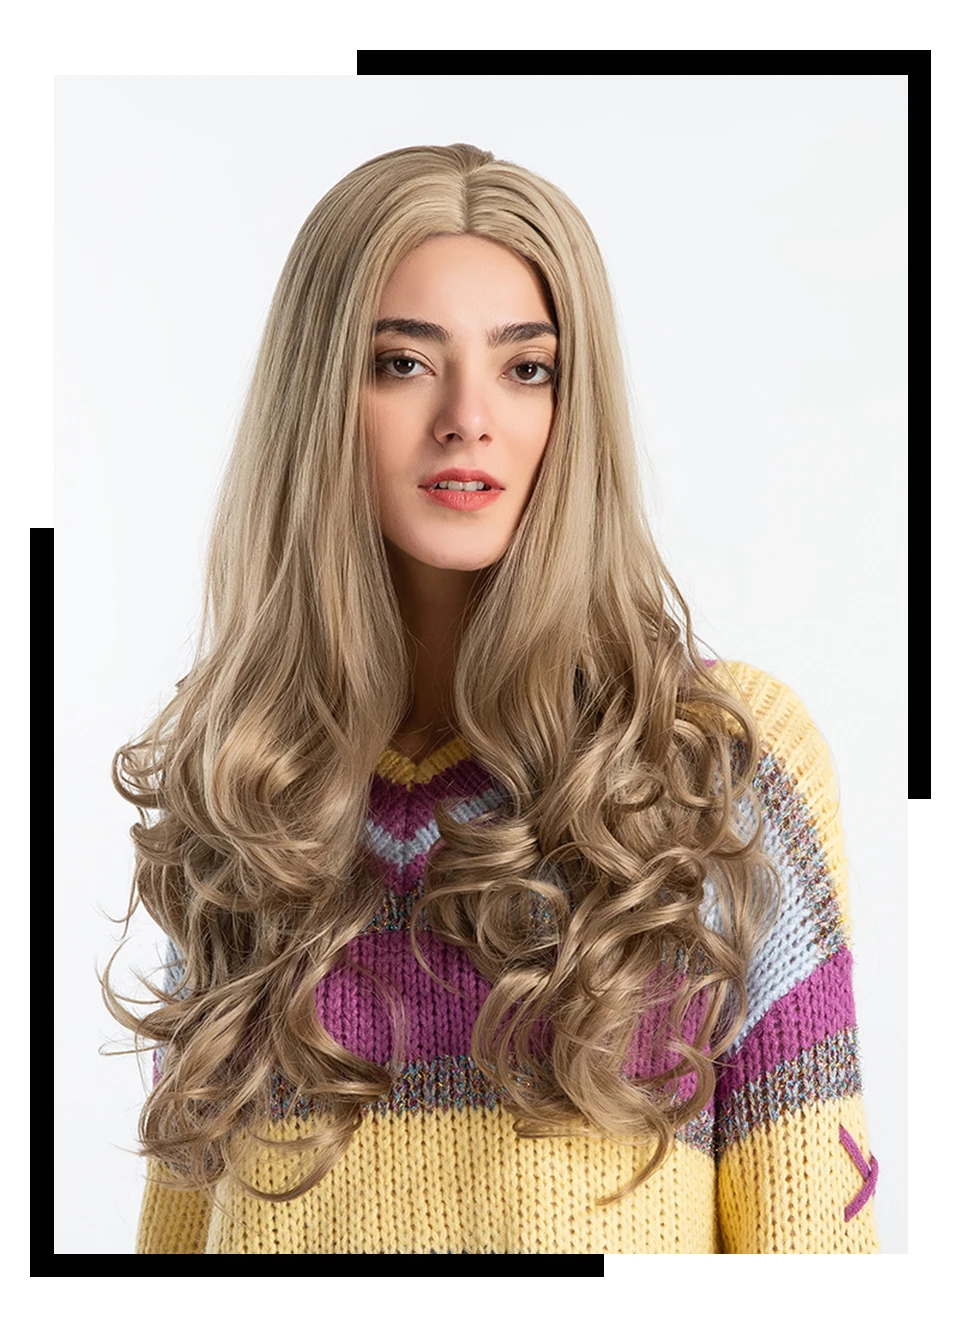 Inhair Cube 26 дюймов Для женщин парики длинные естественная волна Синтетический слоистых Стиль волос светло-коричневый с полной парики